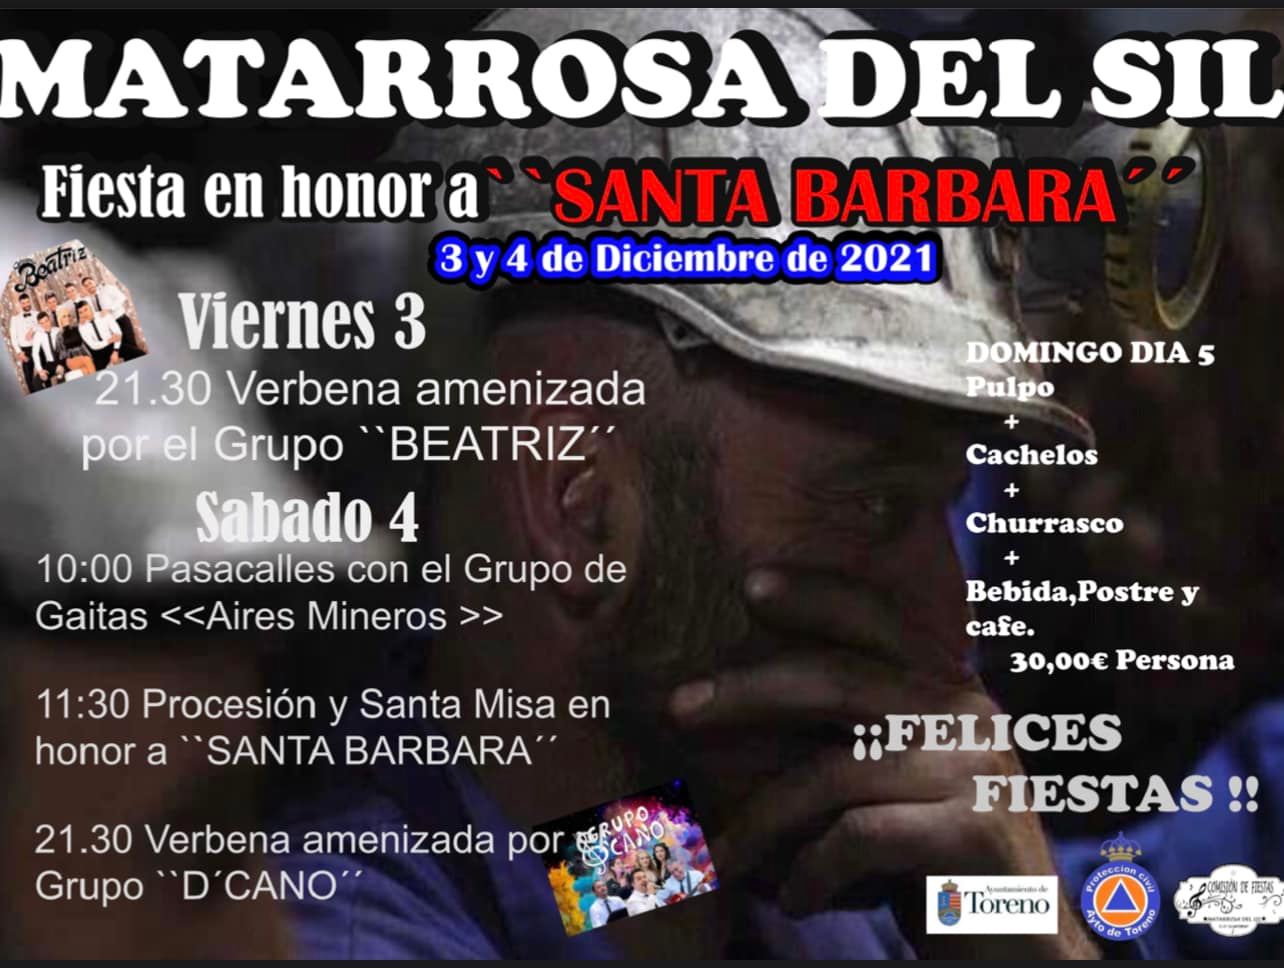 Matarrosa del Sil celebra fiesta en honor a Santa Bárbara los próximos 3, 4 y 5 de diciembre 2